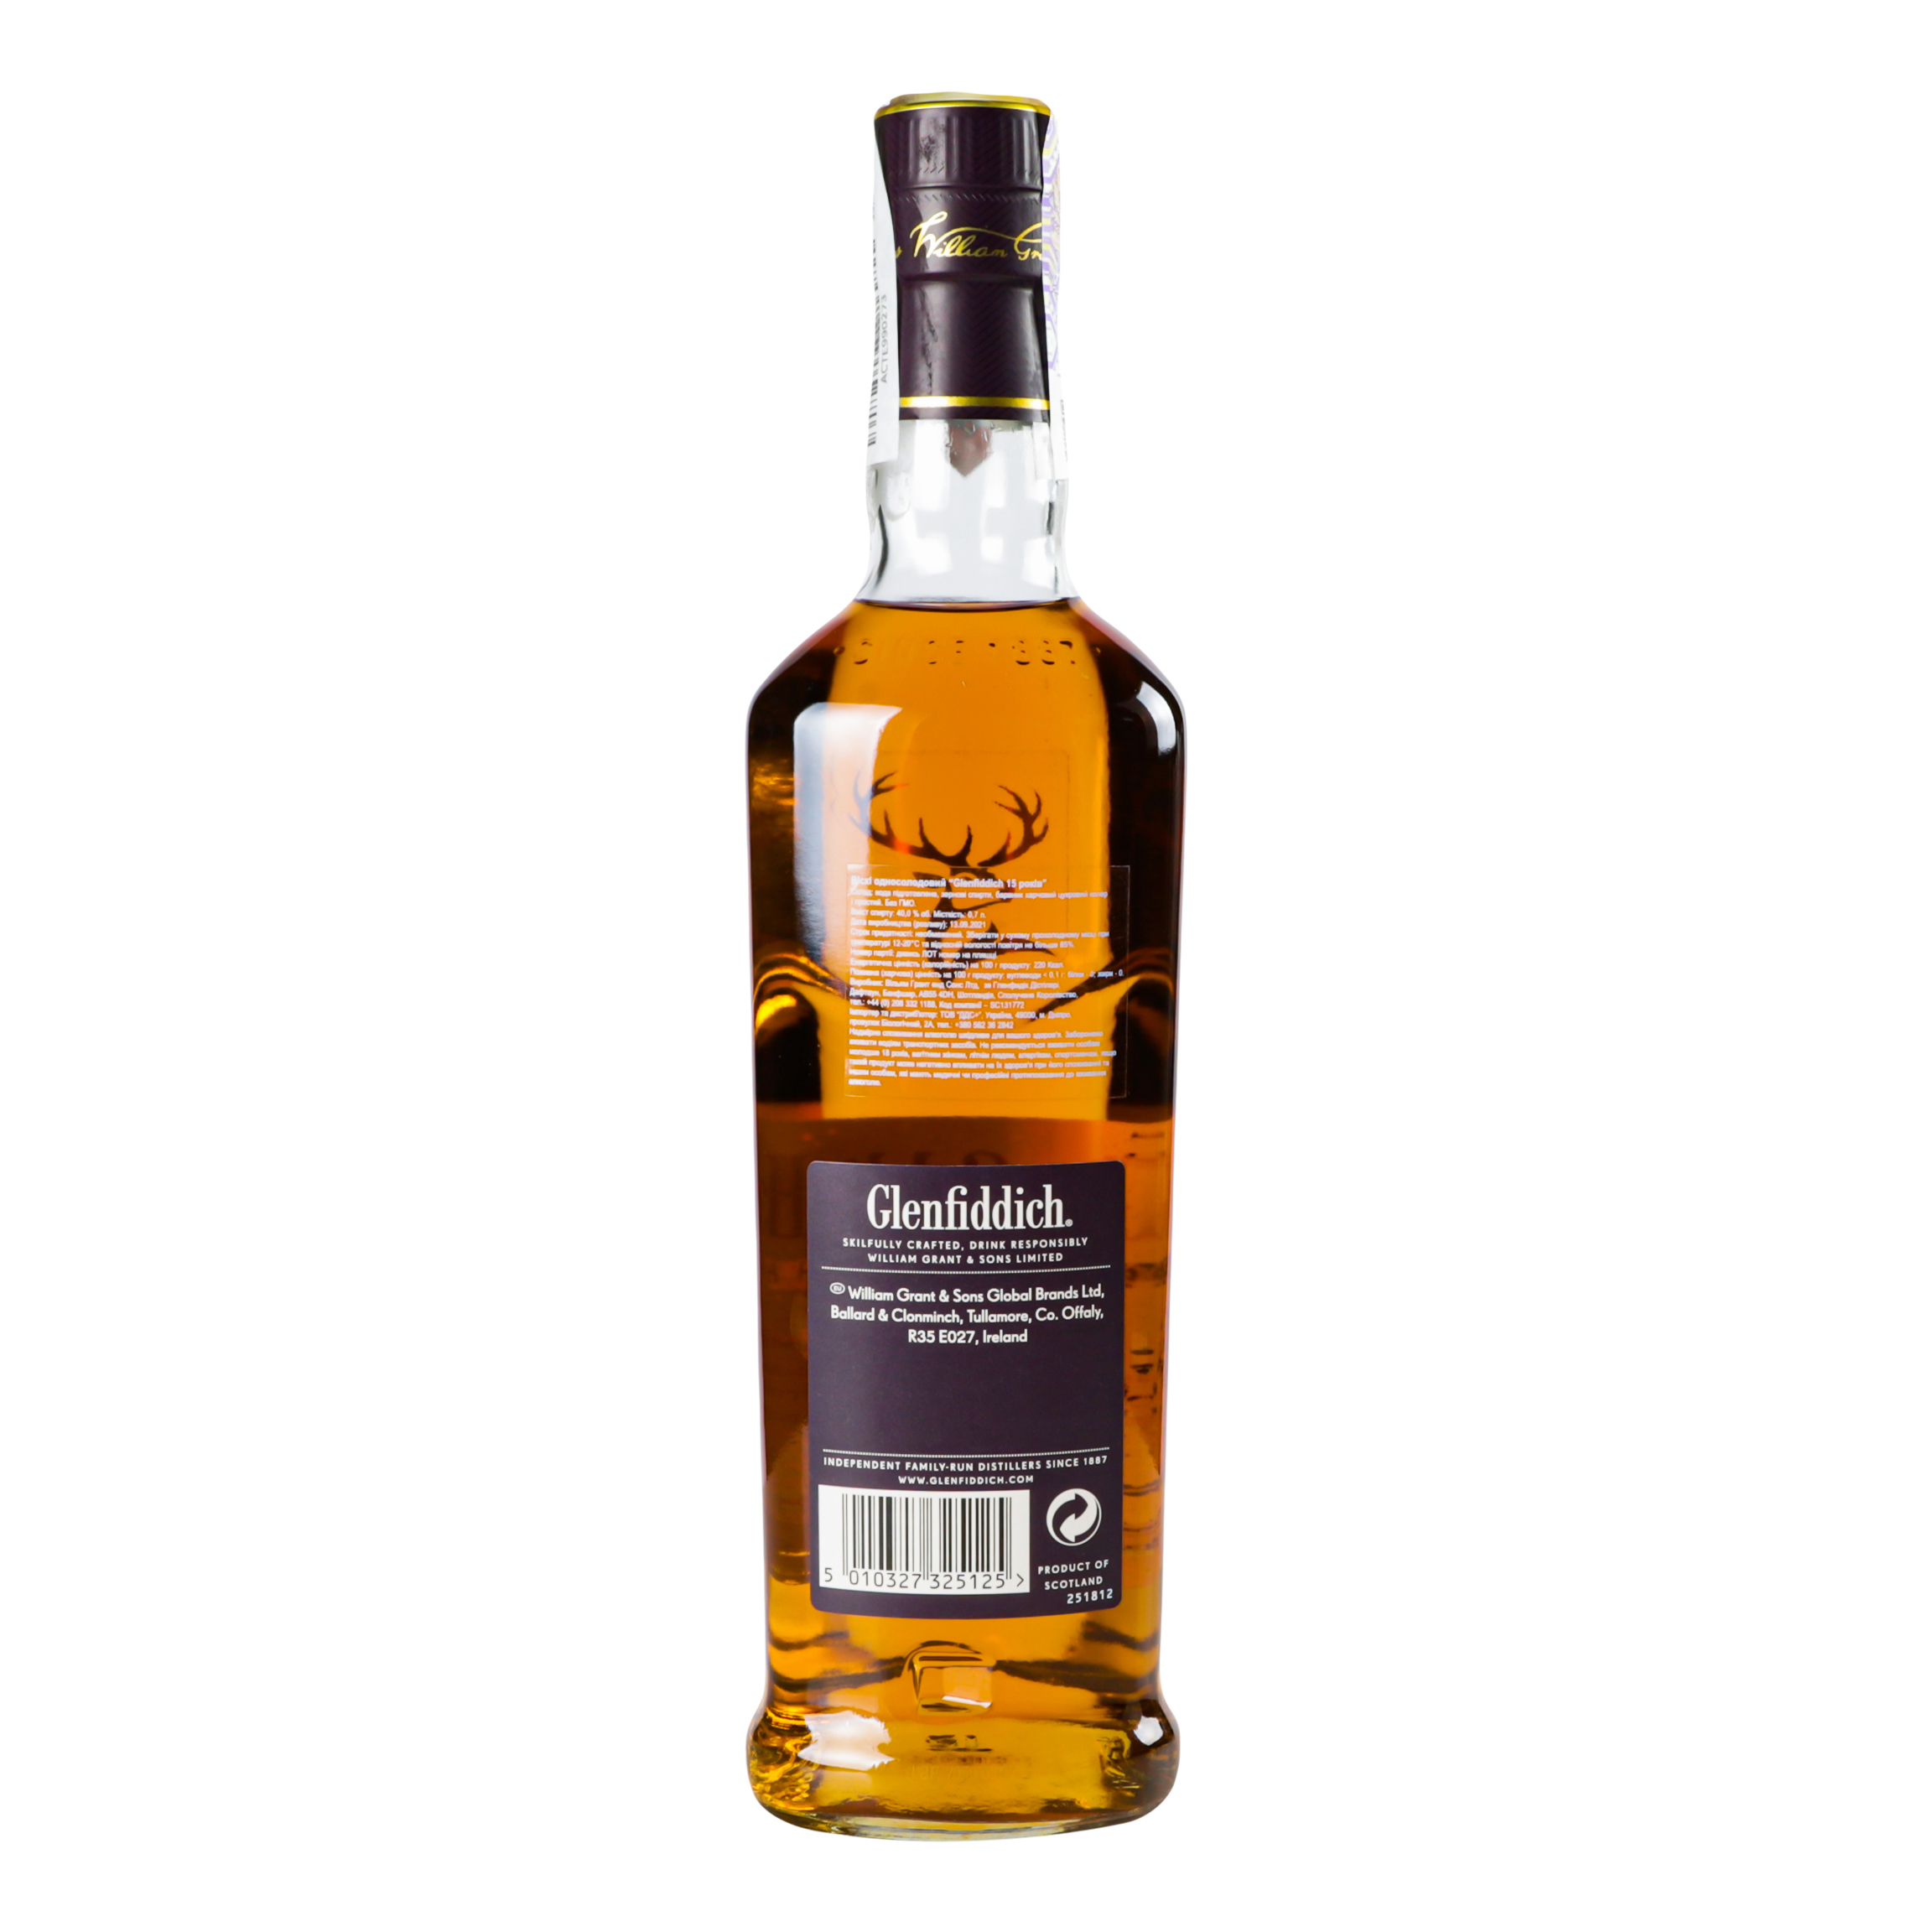 Віскі Glenfiddich Single Malt Scotch, 15 років, 40%, 0,7 л (476802) - фото 2